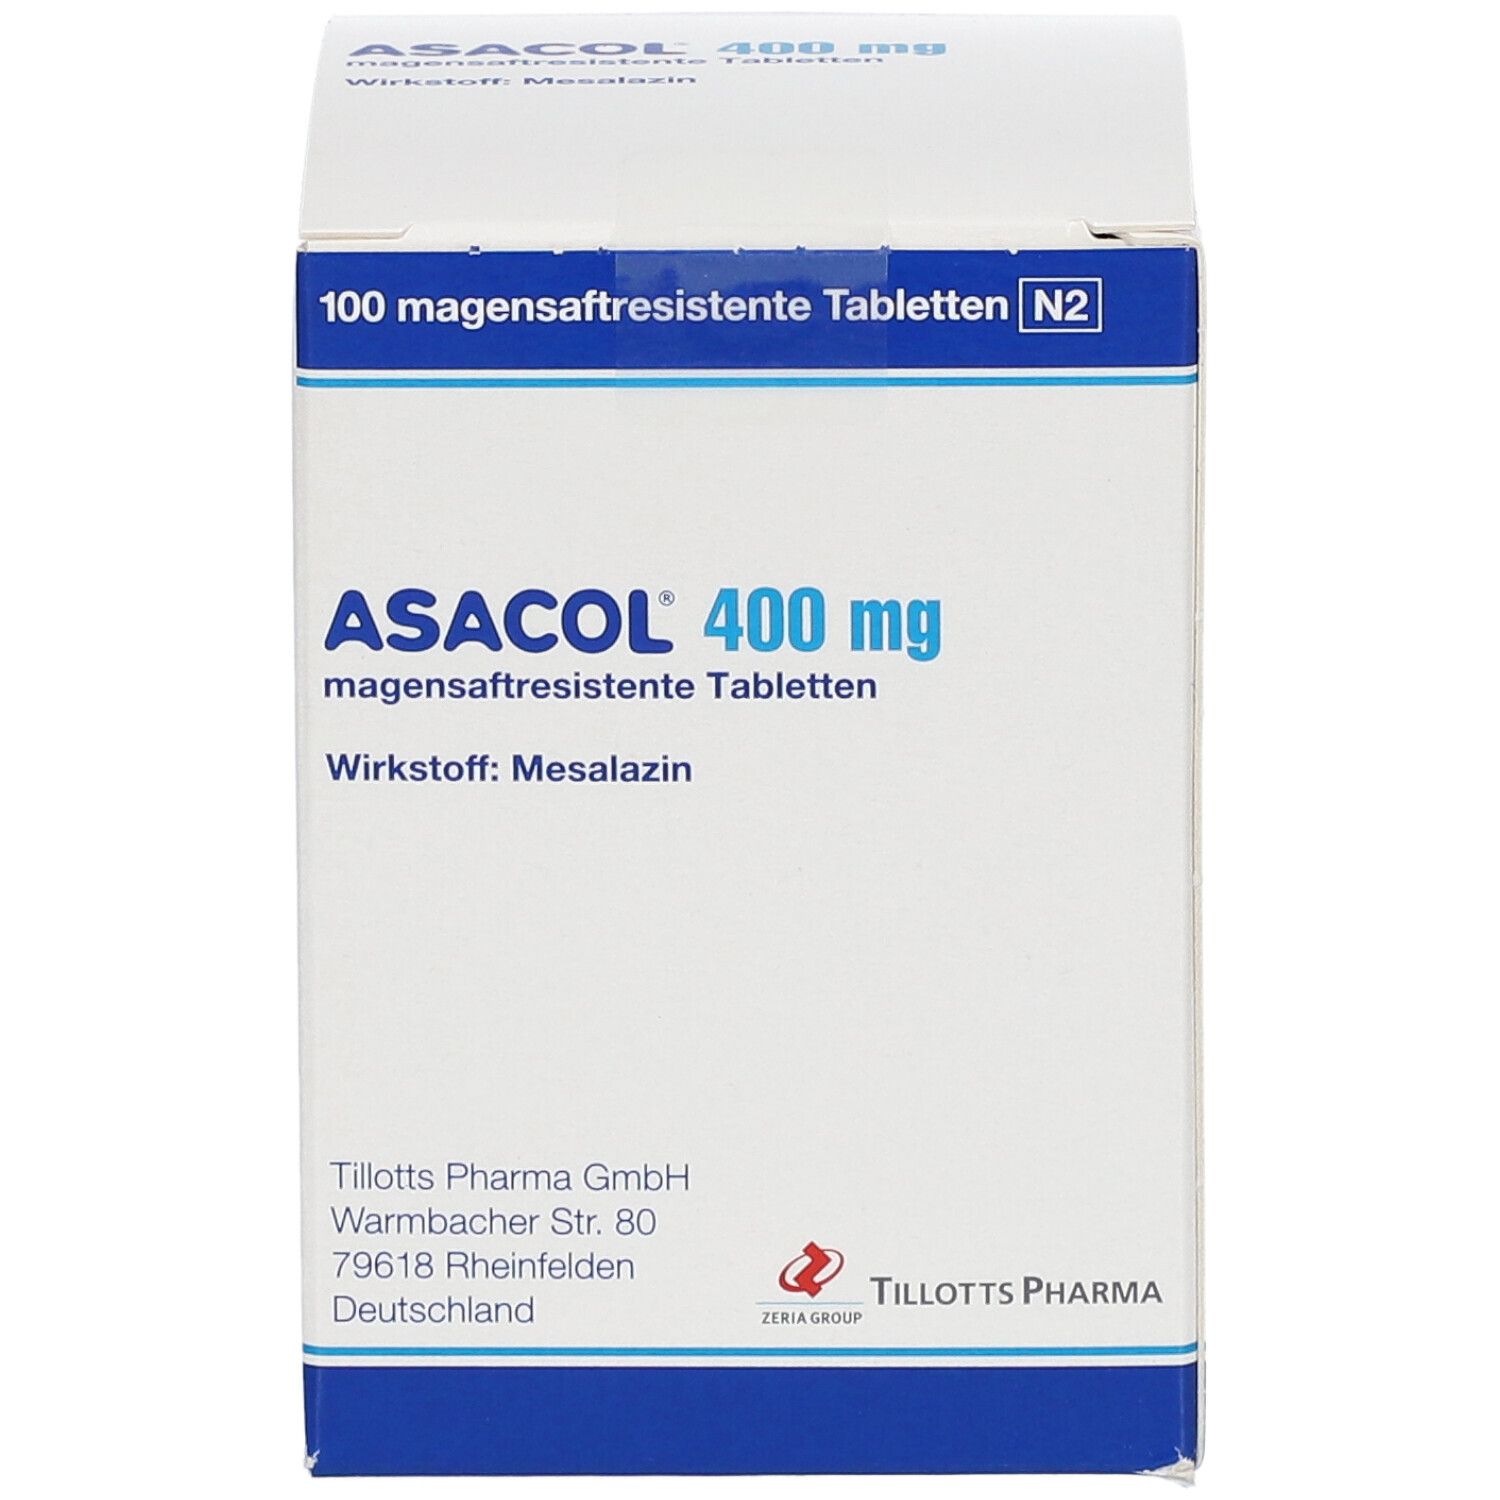 ASACOL® 400 mg